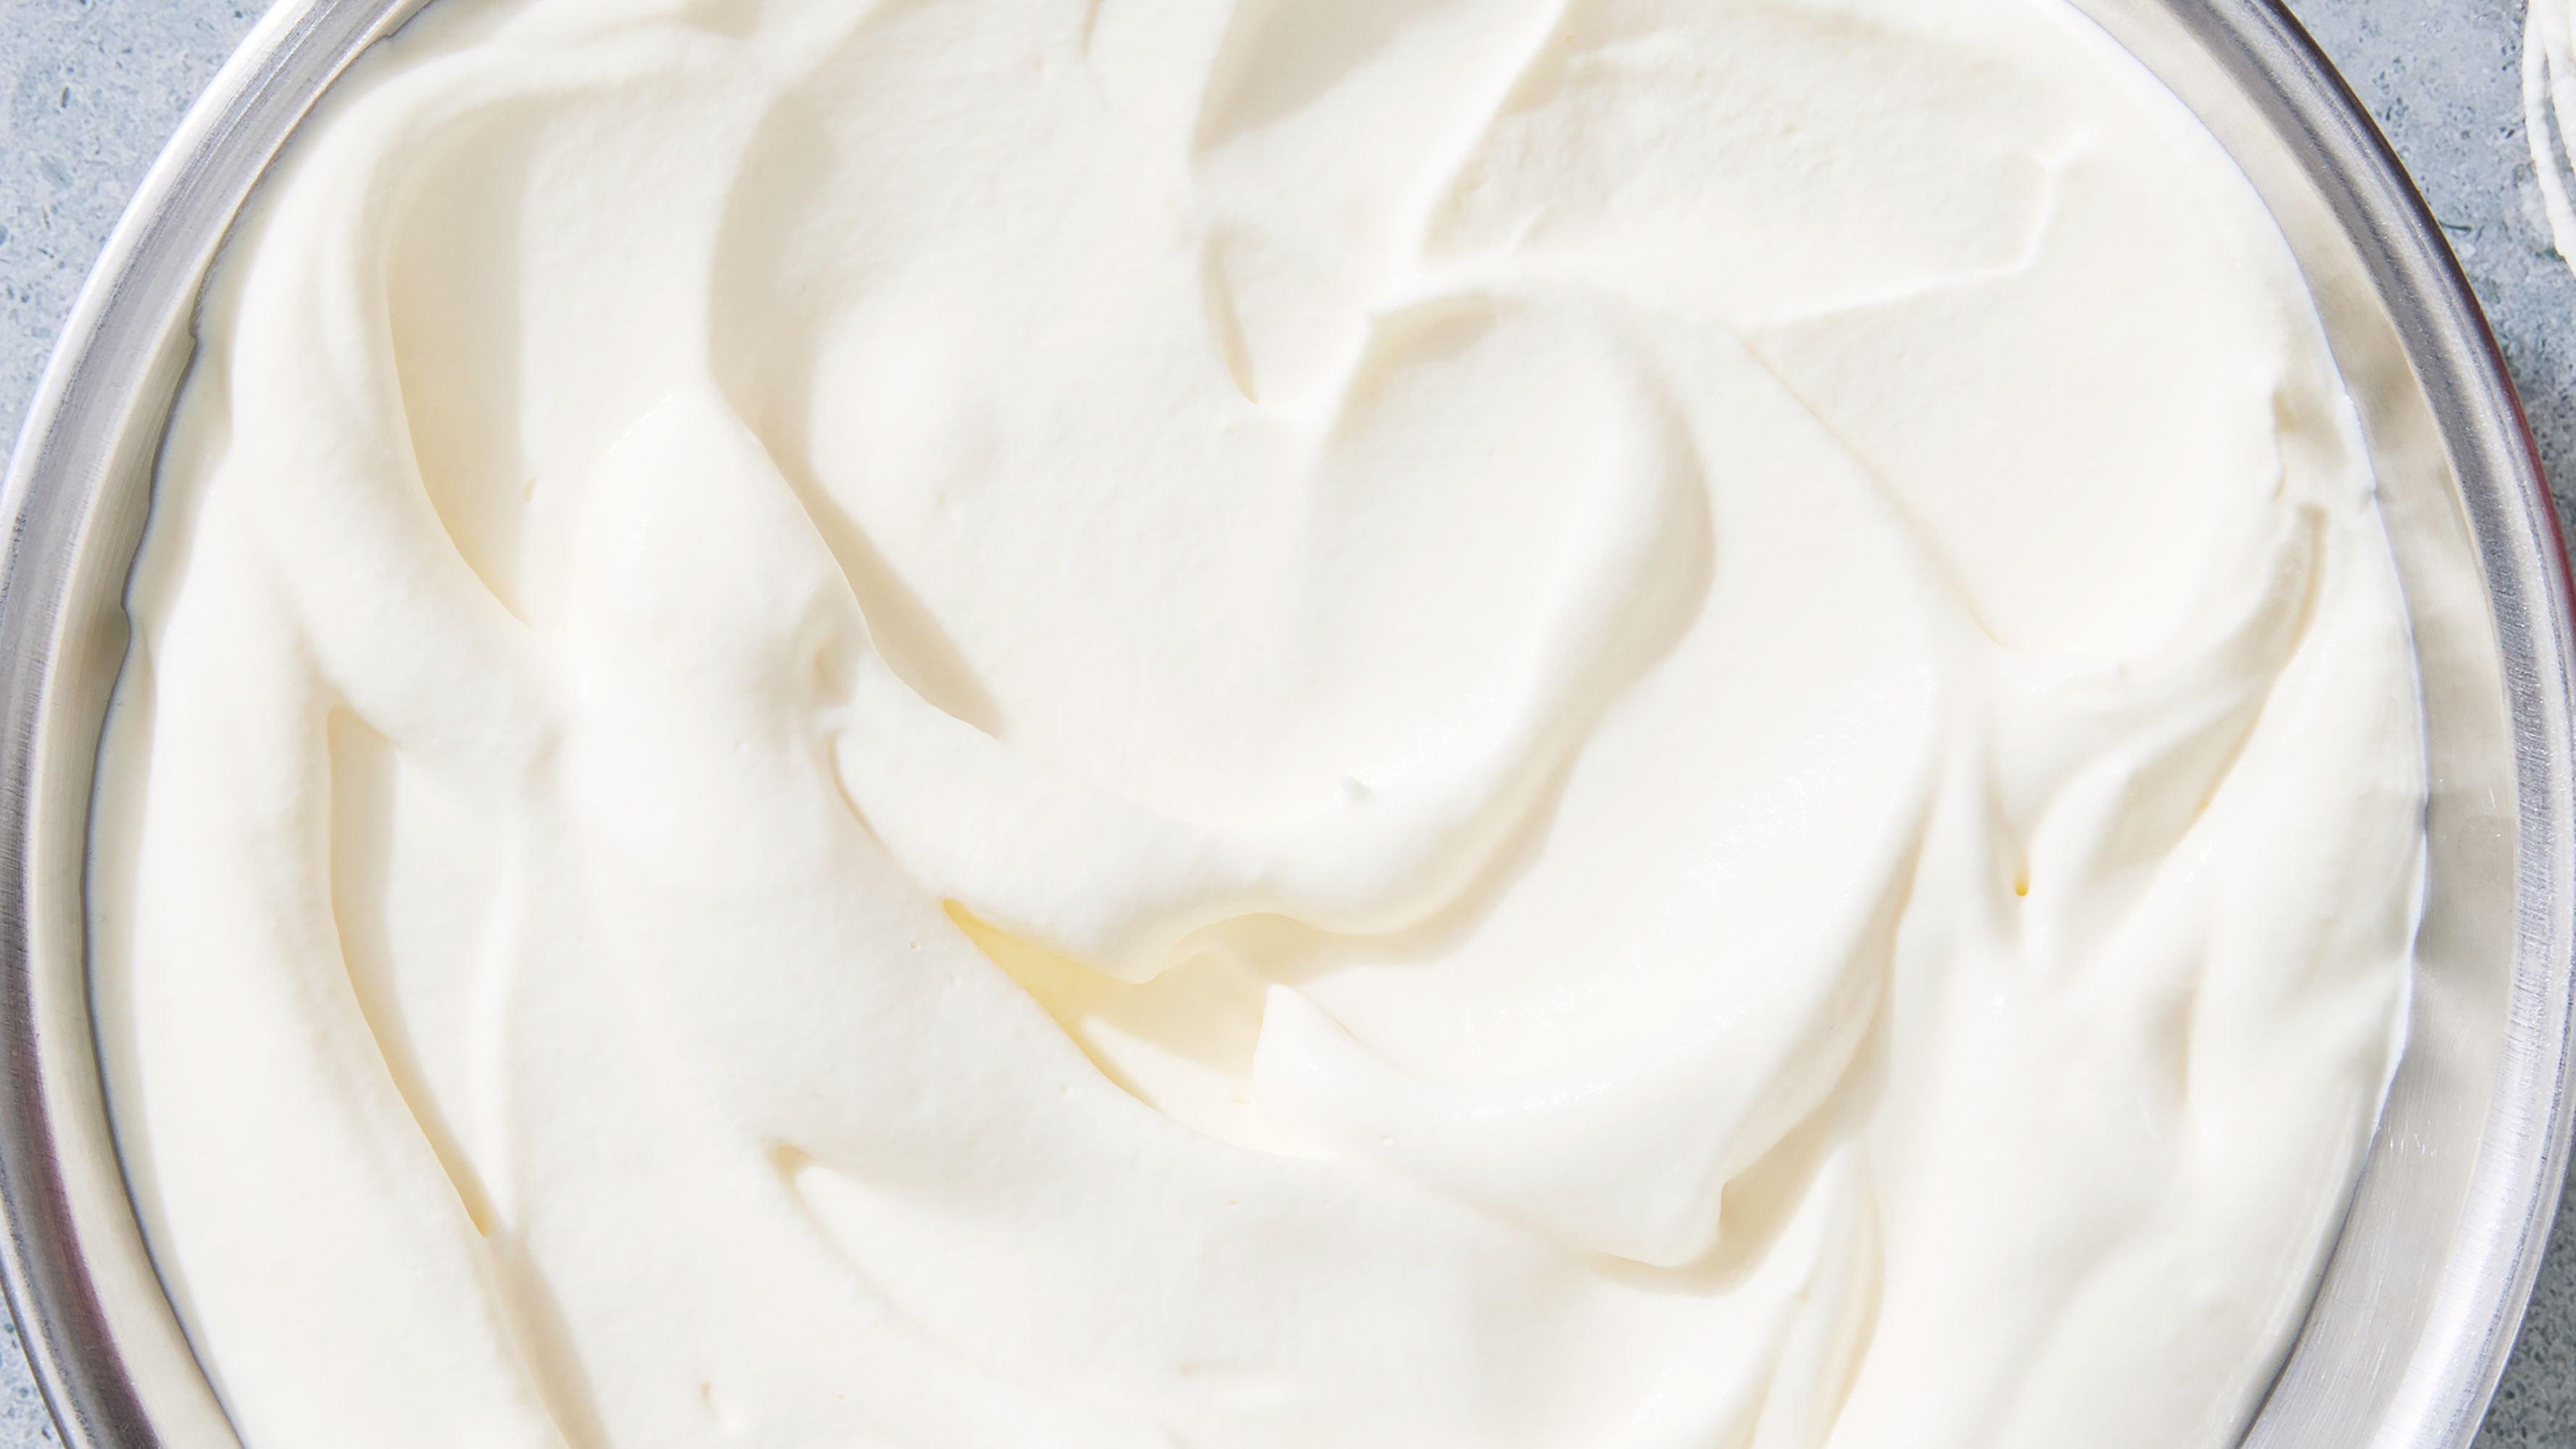 Homemade Whipped Cream - Live Well Bake Often